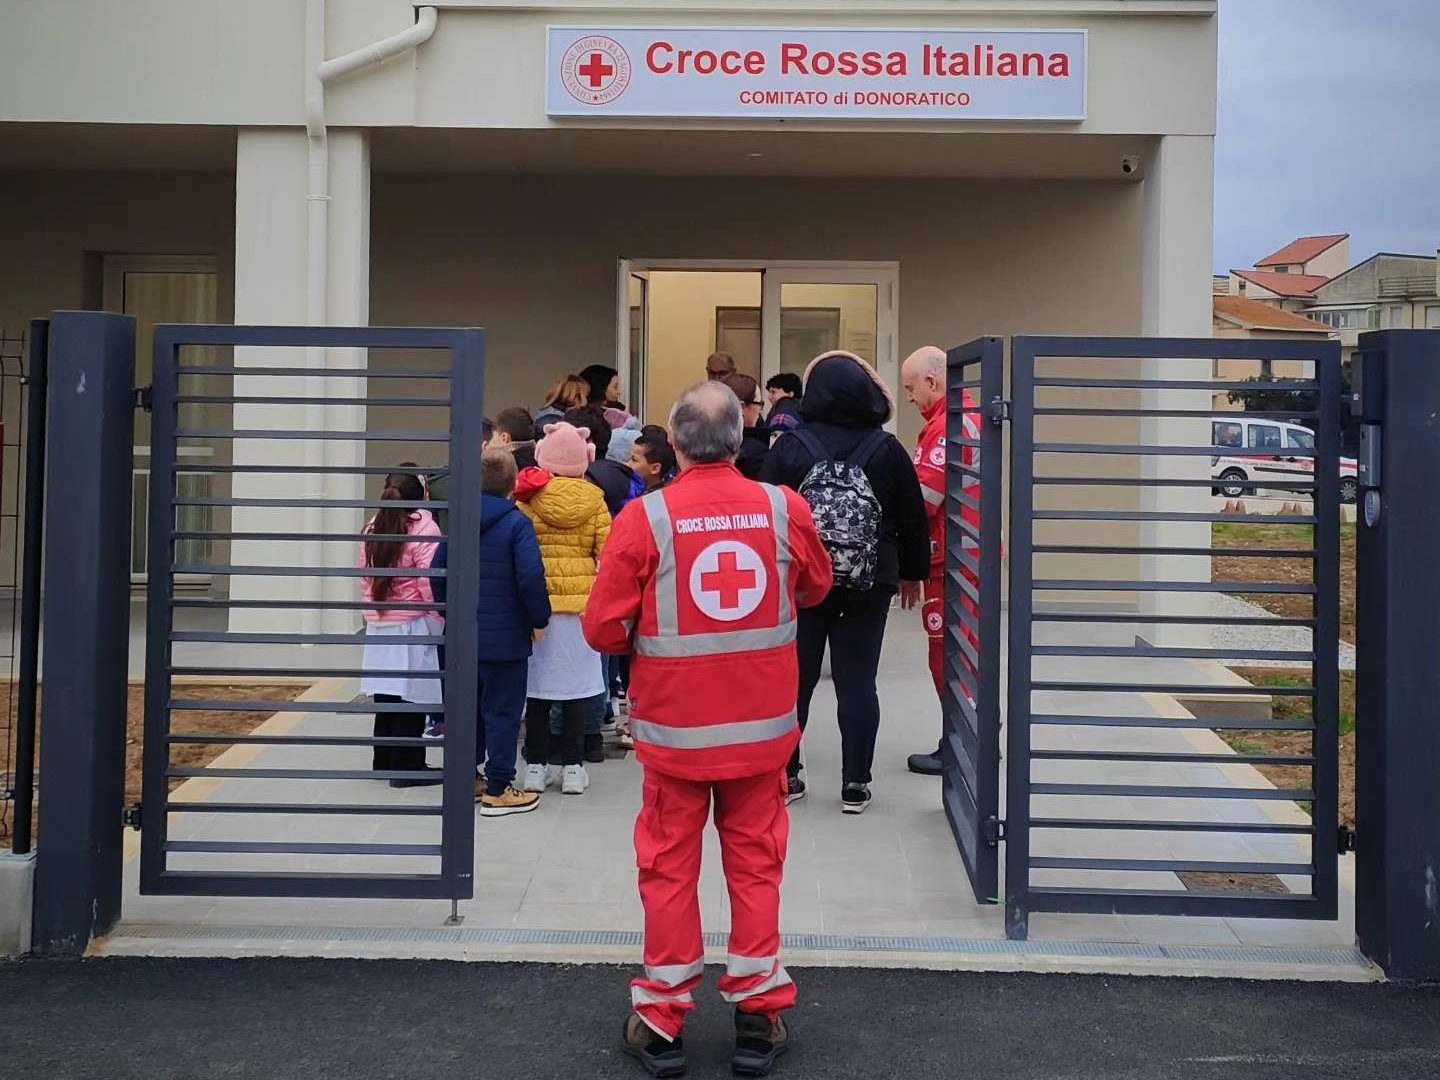 Visita delle scuole elementari 01 e1707950843289 - Croce Rossa Italiana - Comitato di Donoratico